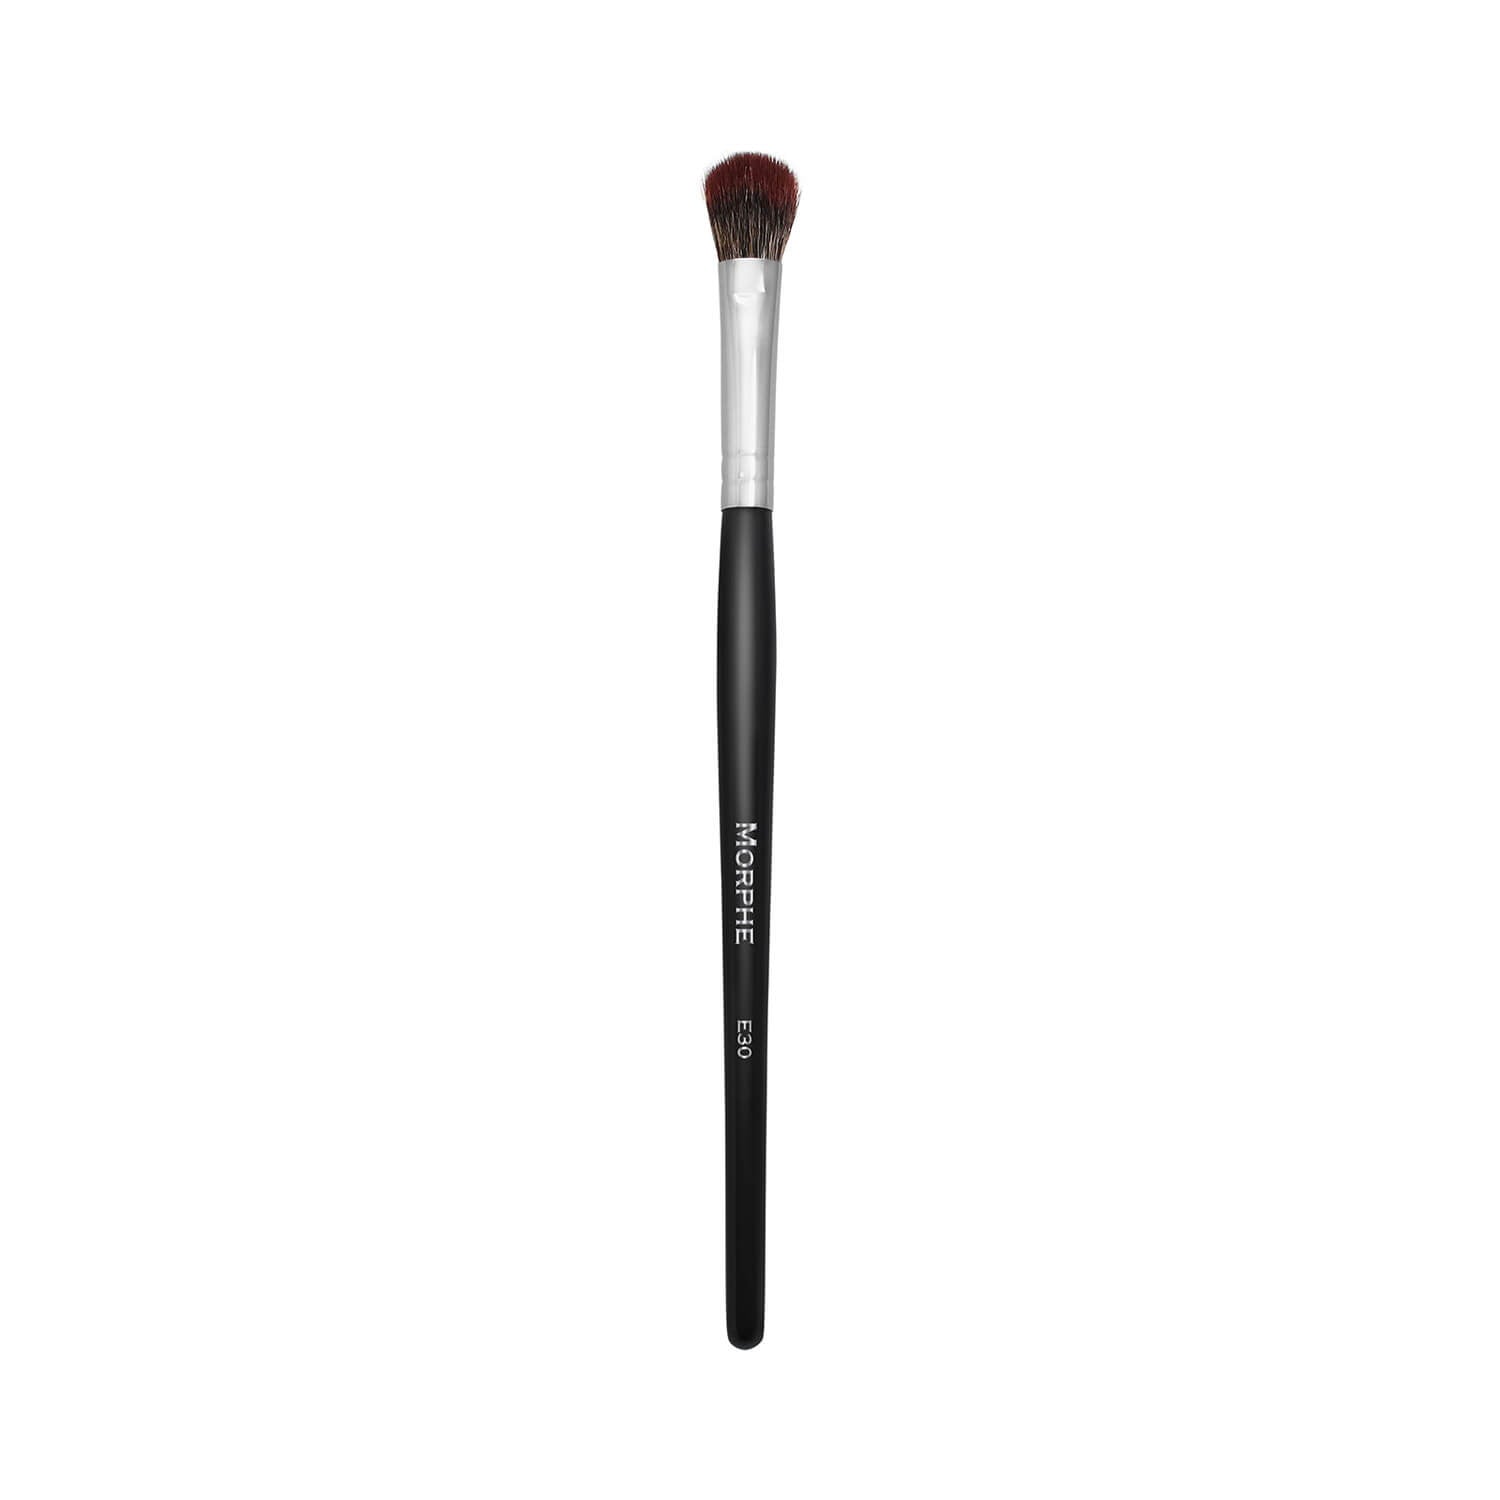 Morphe Cosmetics E30 Blending Fluff Brush